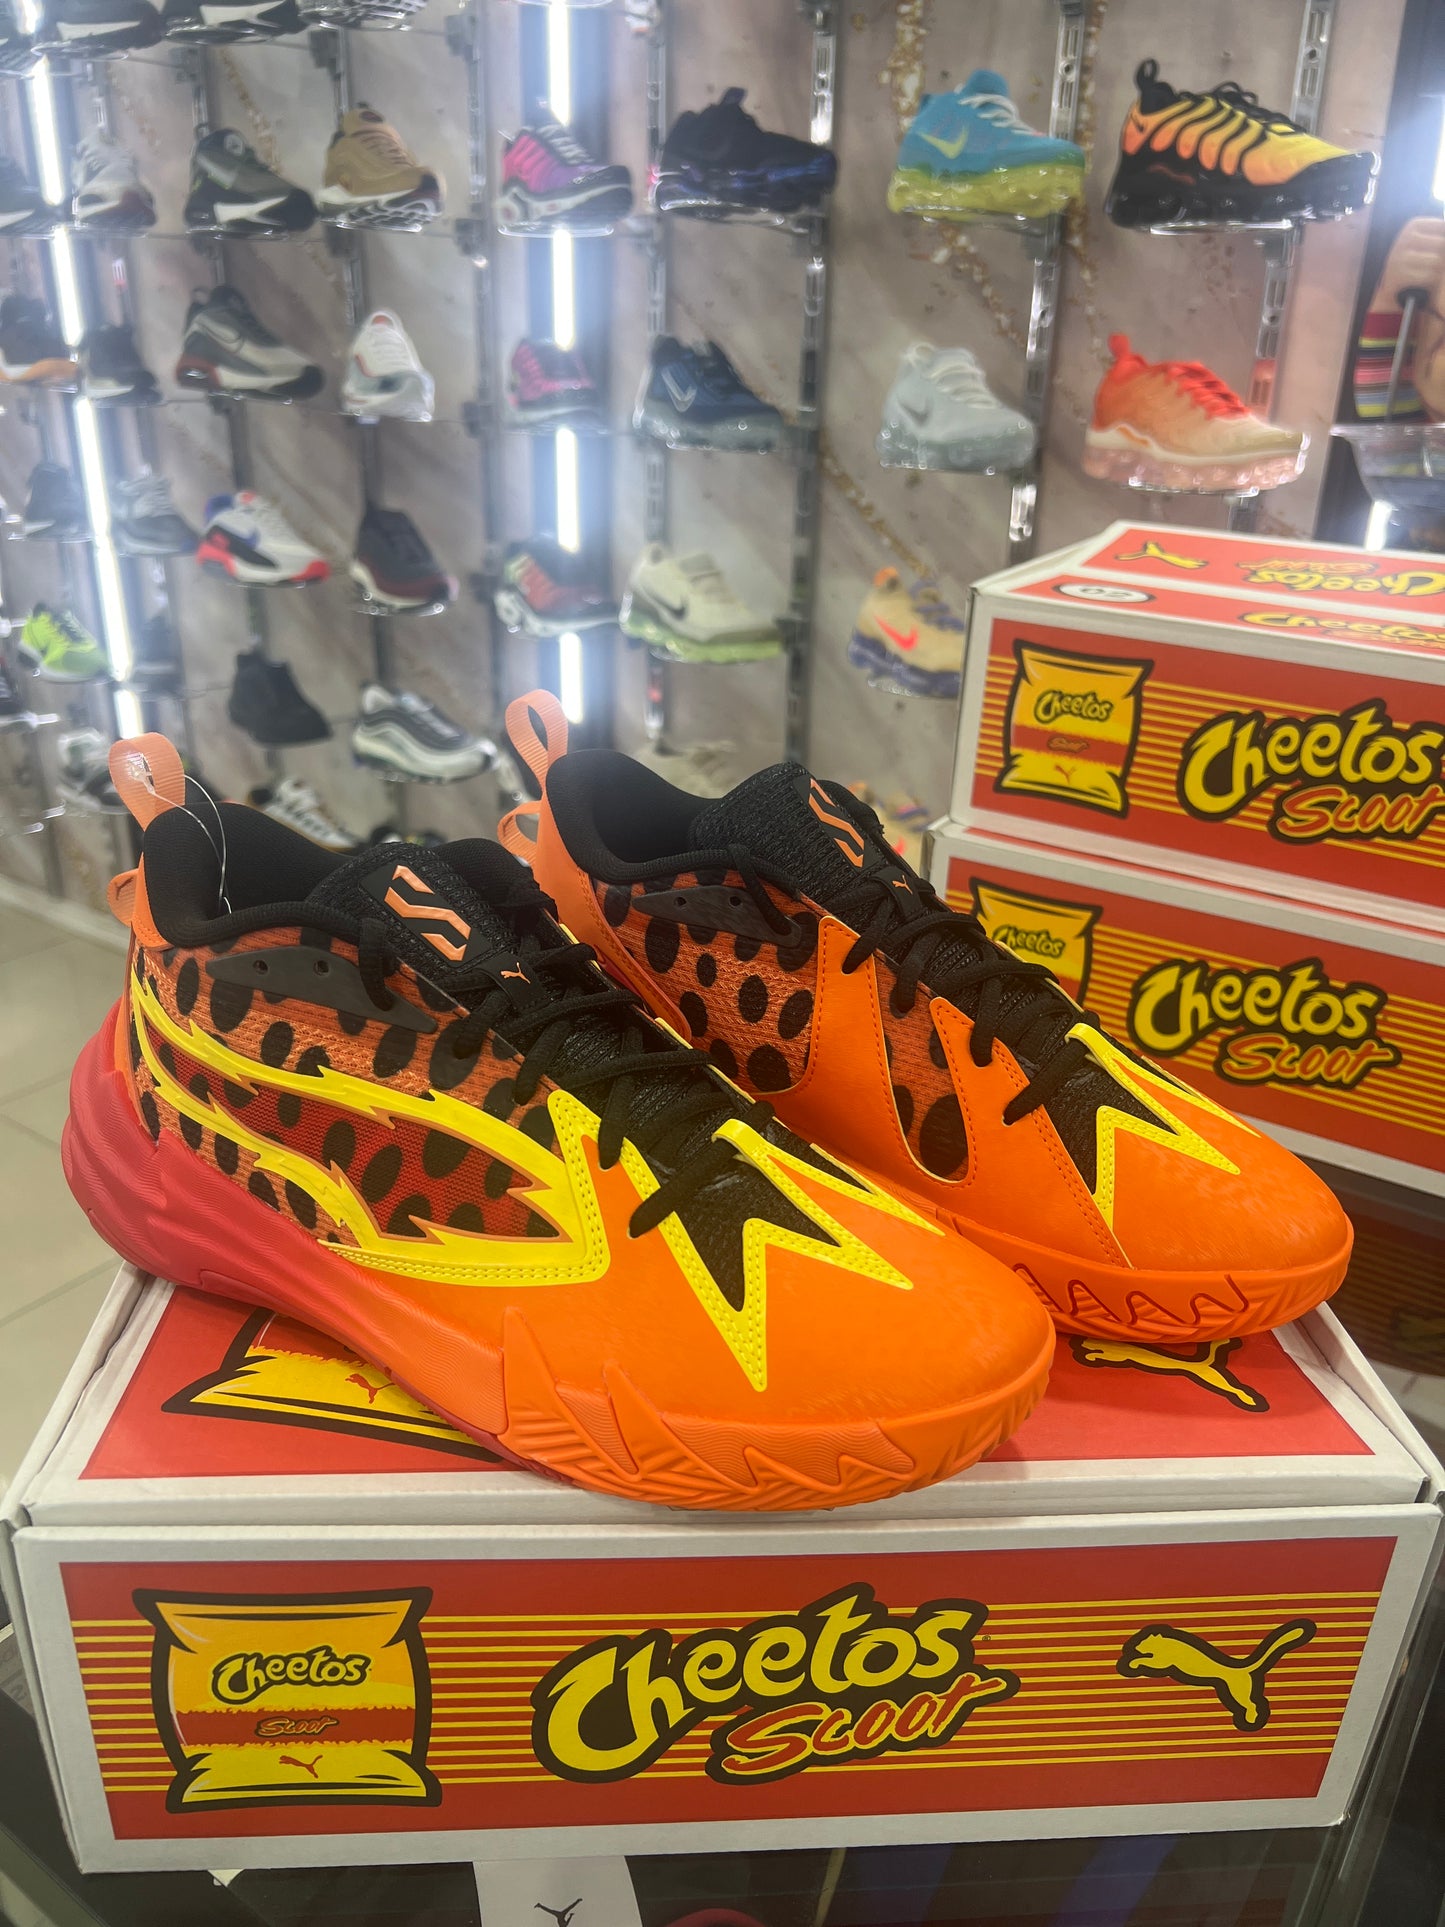 Puma Scoot Zeros Cheetos Basketball